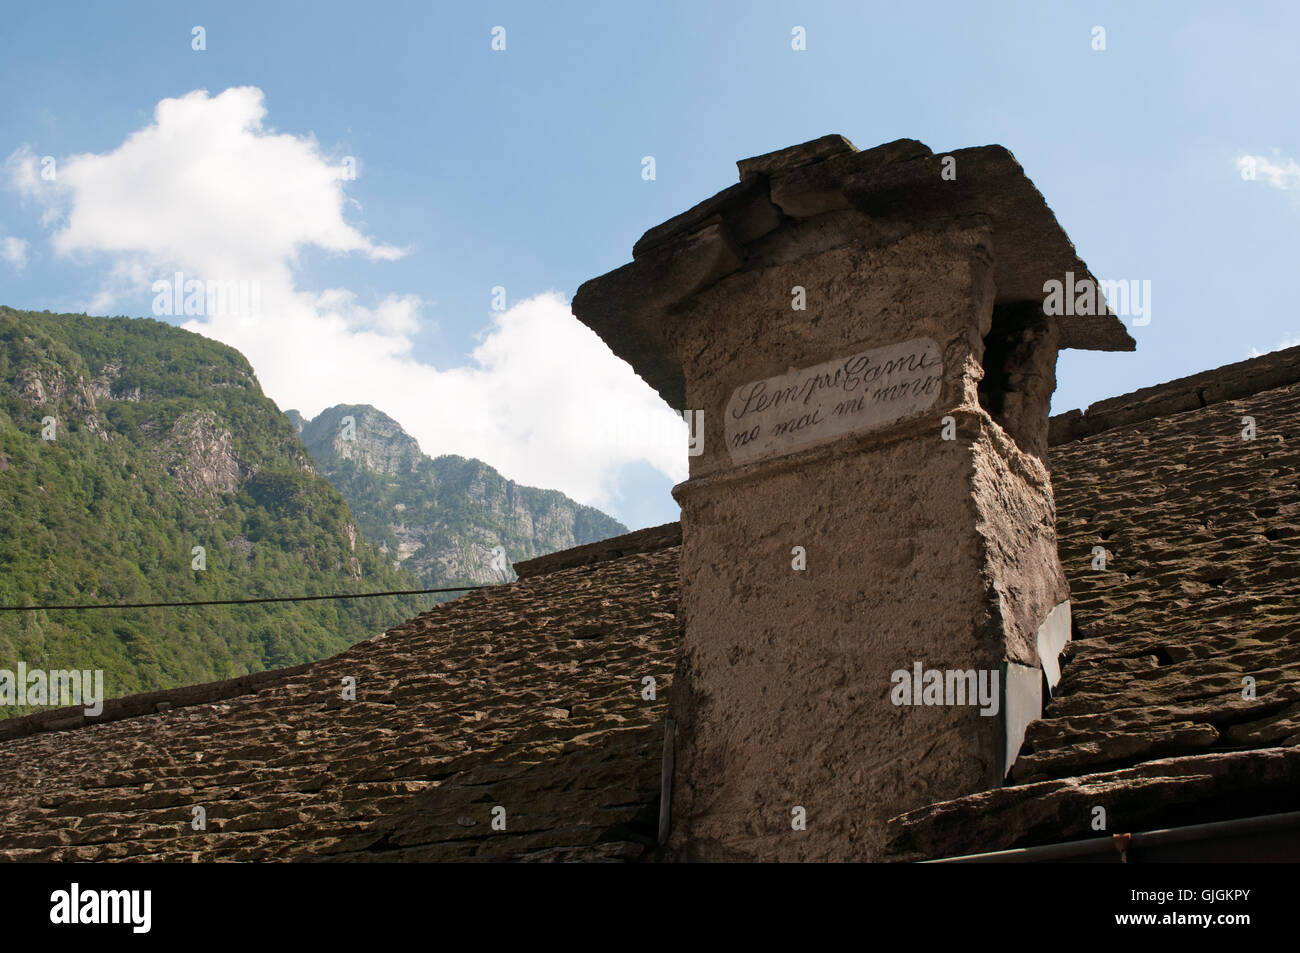 Suiza, Europa: vista de una chimenea en la vieja aldea de Lavertezzo, un antiguo pueblo de piedra en el cantón de Ticino, en el verde Valle de Verzasca Foto de stock